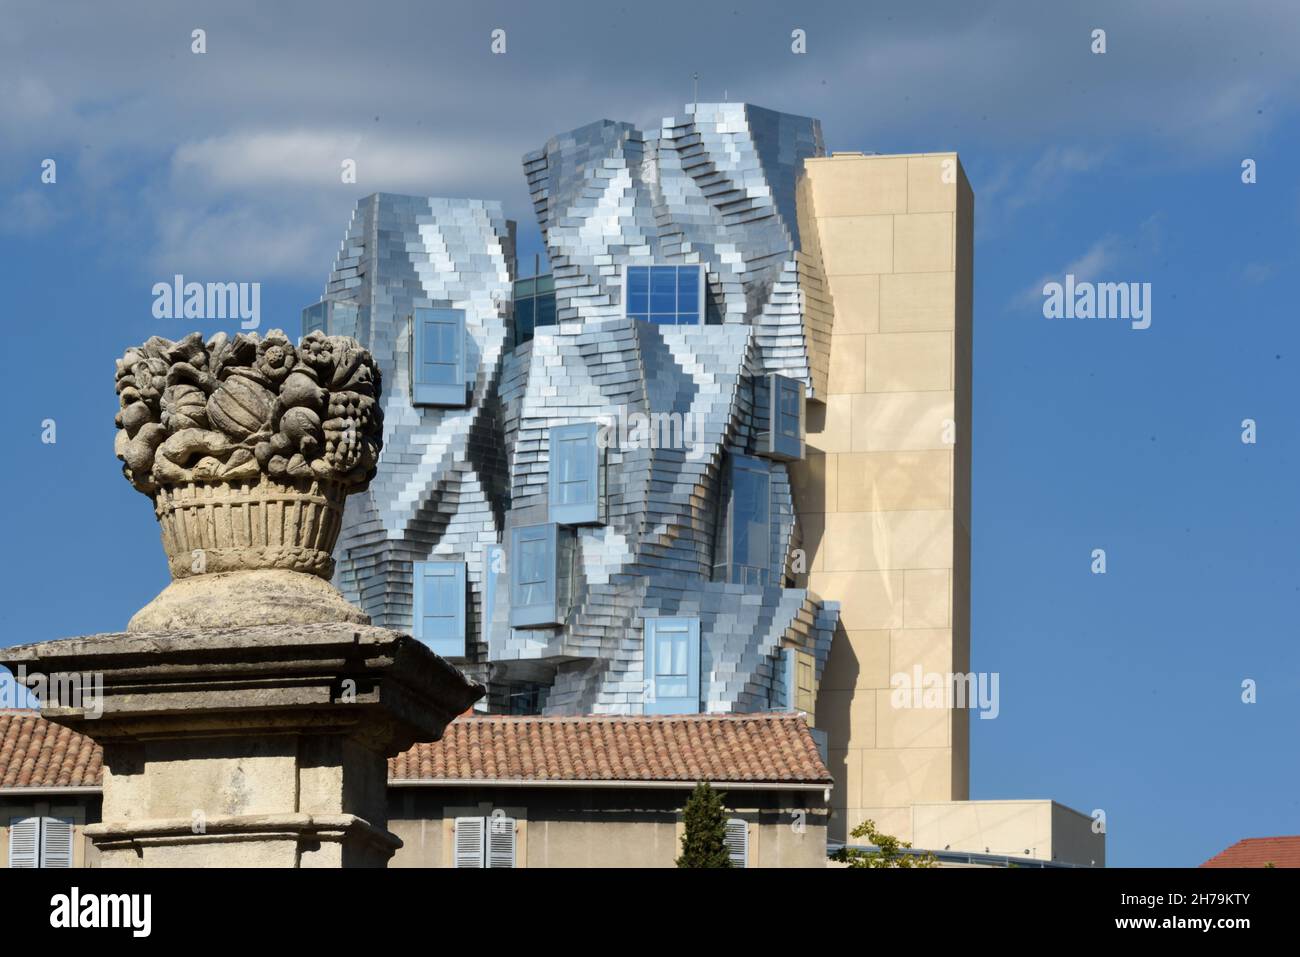 La tour de la fondation Luma, conçue par Frank Gehry, surplombe l'architecture traditionnelle et la statuaire du Giatpost de fruit basket à Arles Provence France Banque D'Images